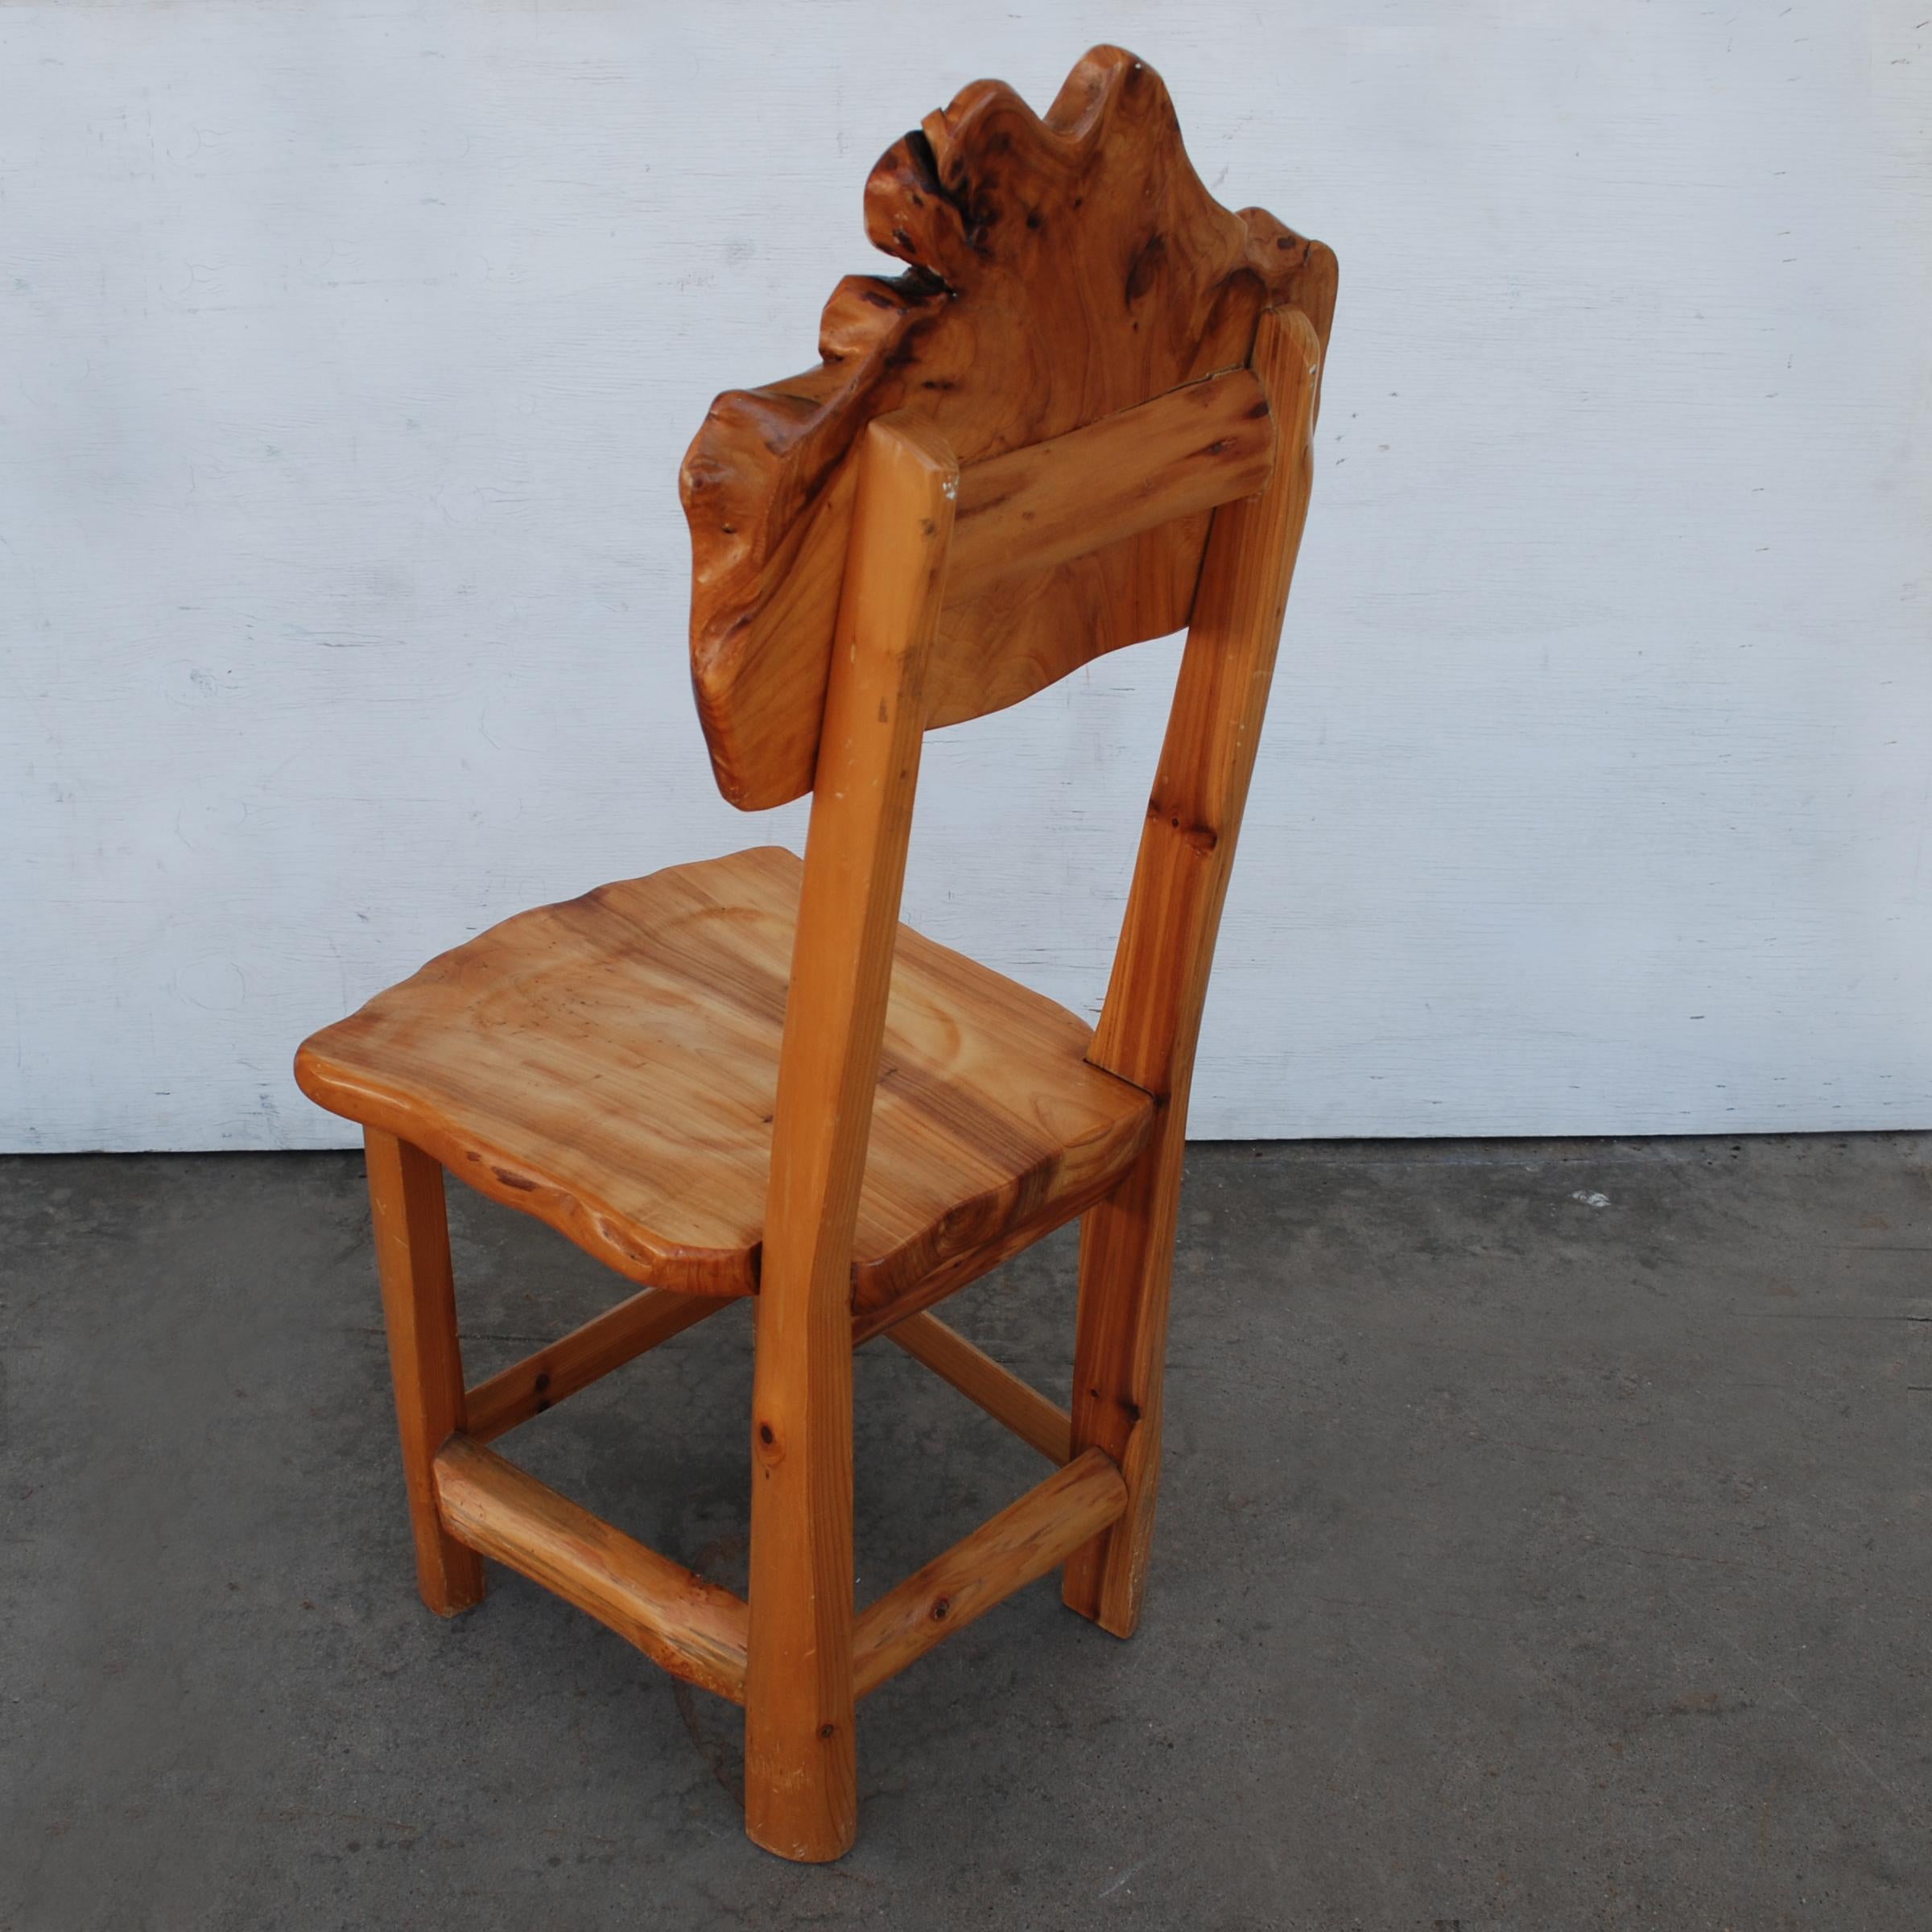 Chaise d'appoint en bois organique de forme libre, Live Edge

La chaise est fabriquée à partir de séquoias, et a une forme très organique.